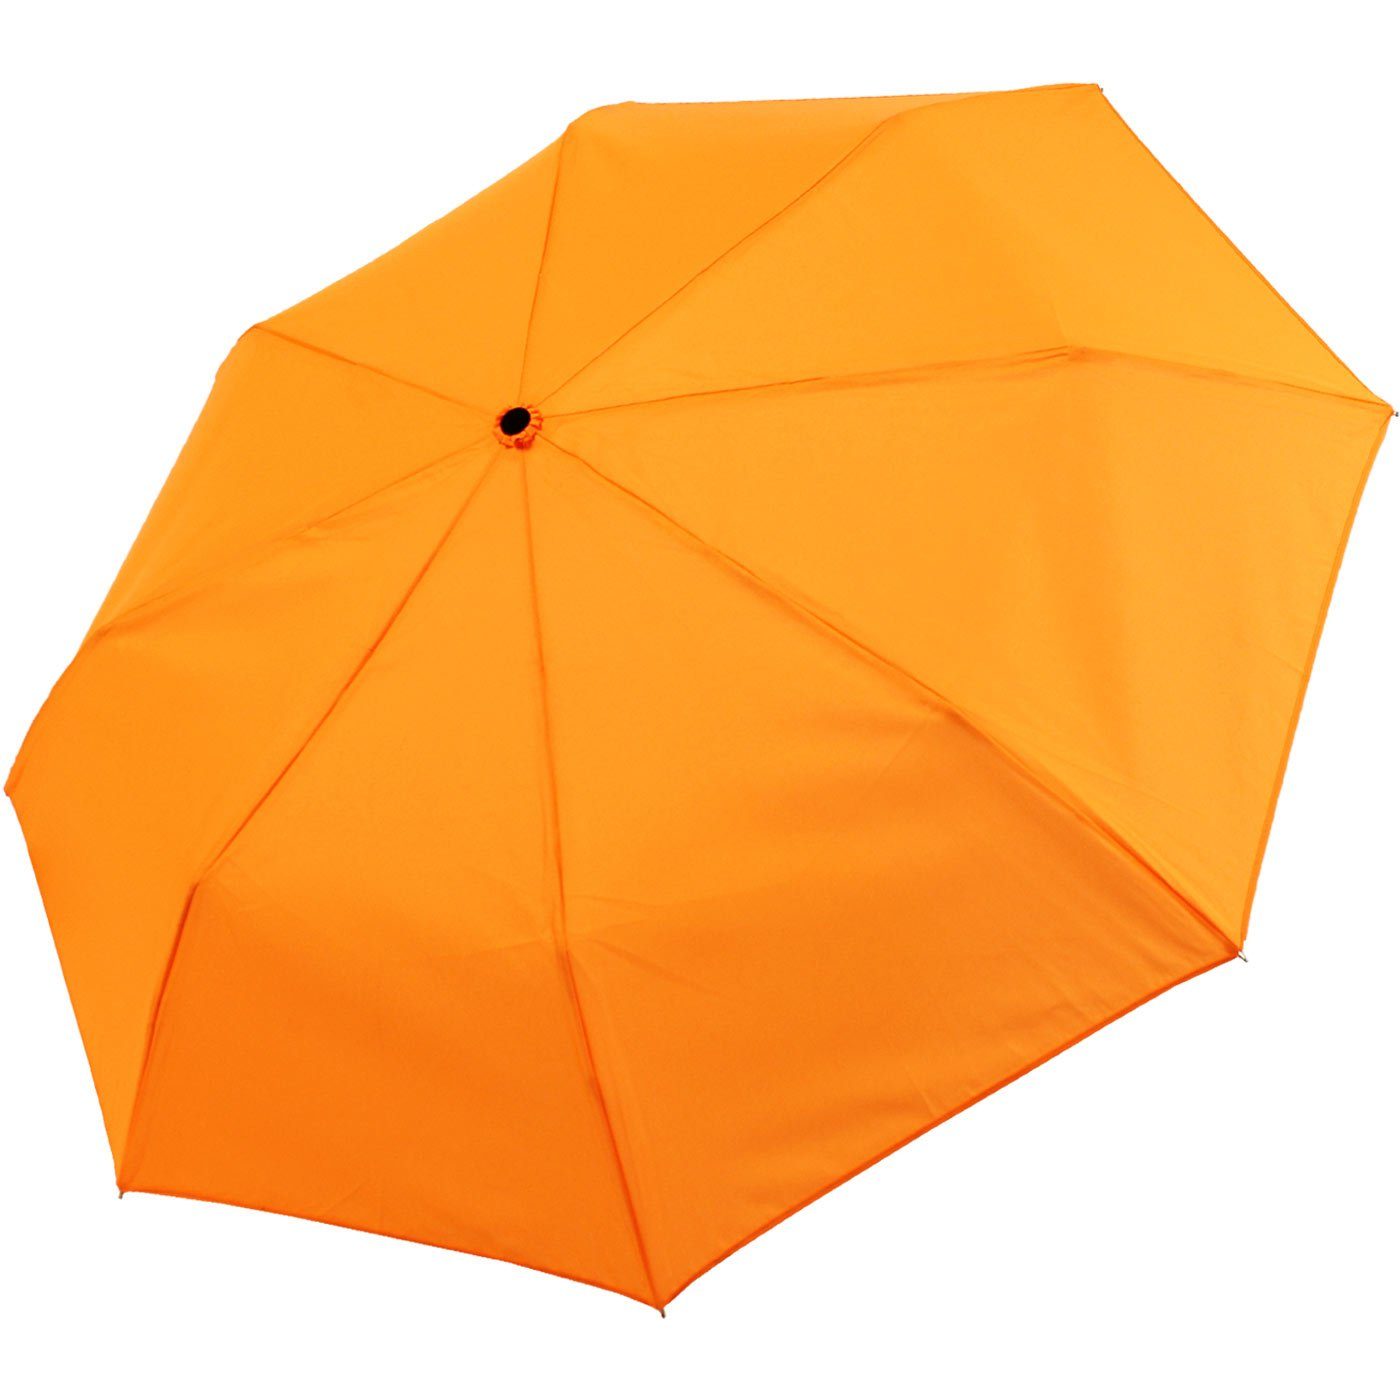 mit Taschenregenschirm Light großem Mini extra Ultra iX-brella Dach - neon-orange - farbenfroh leicht,